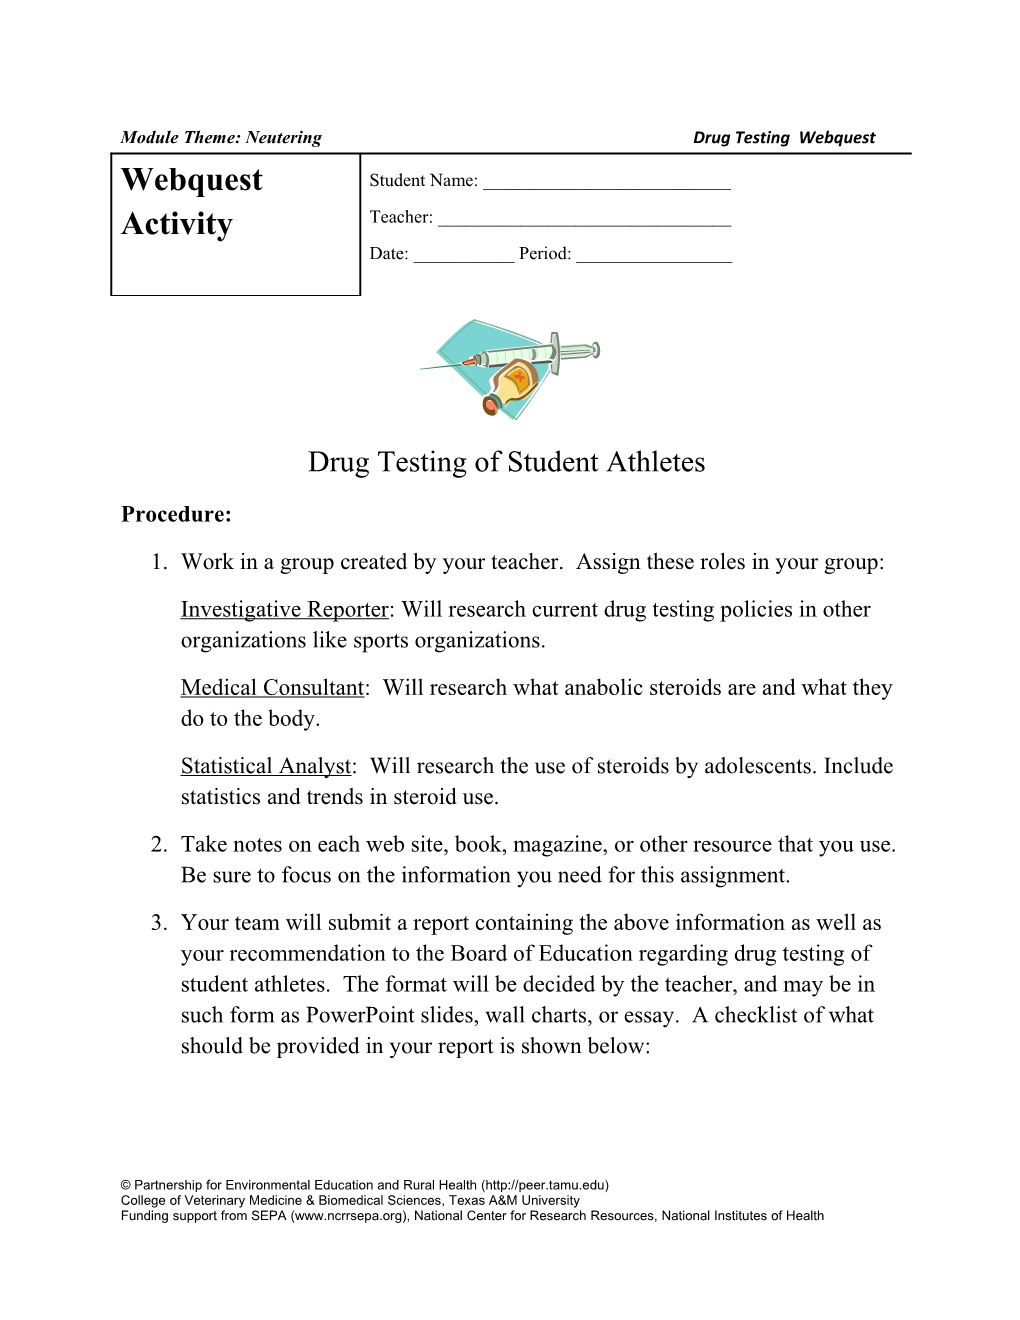 Drug Testingof Student Athletes